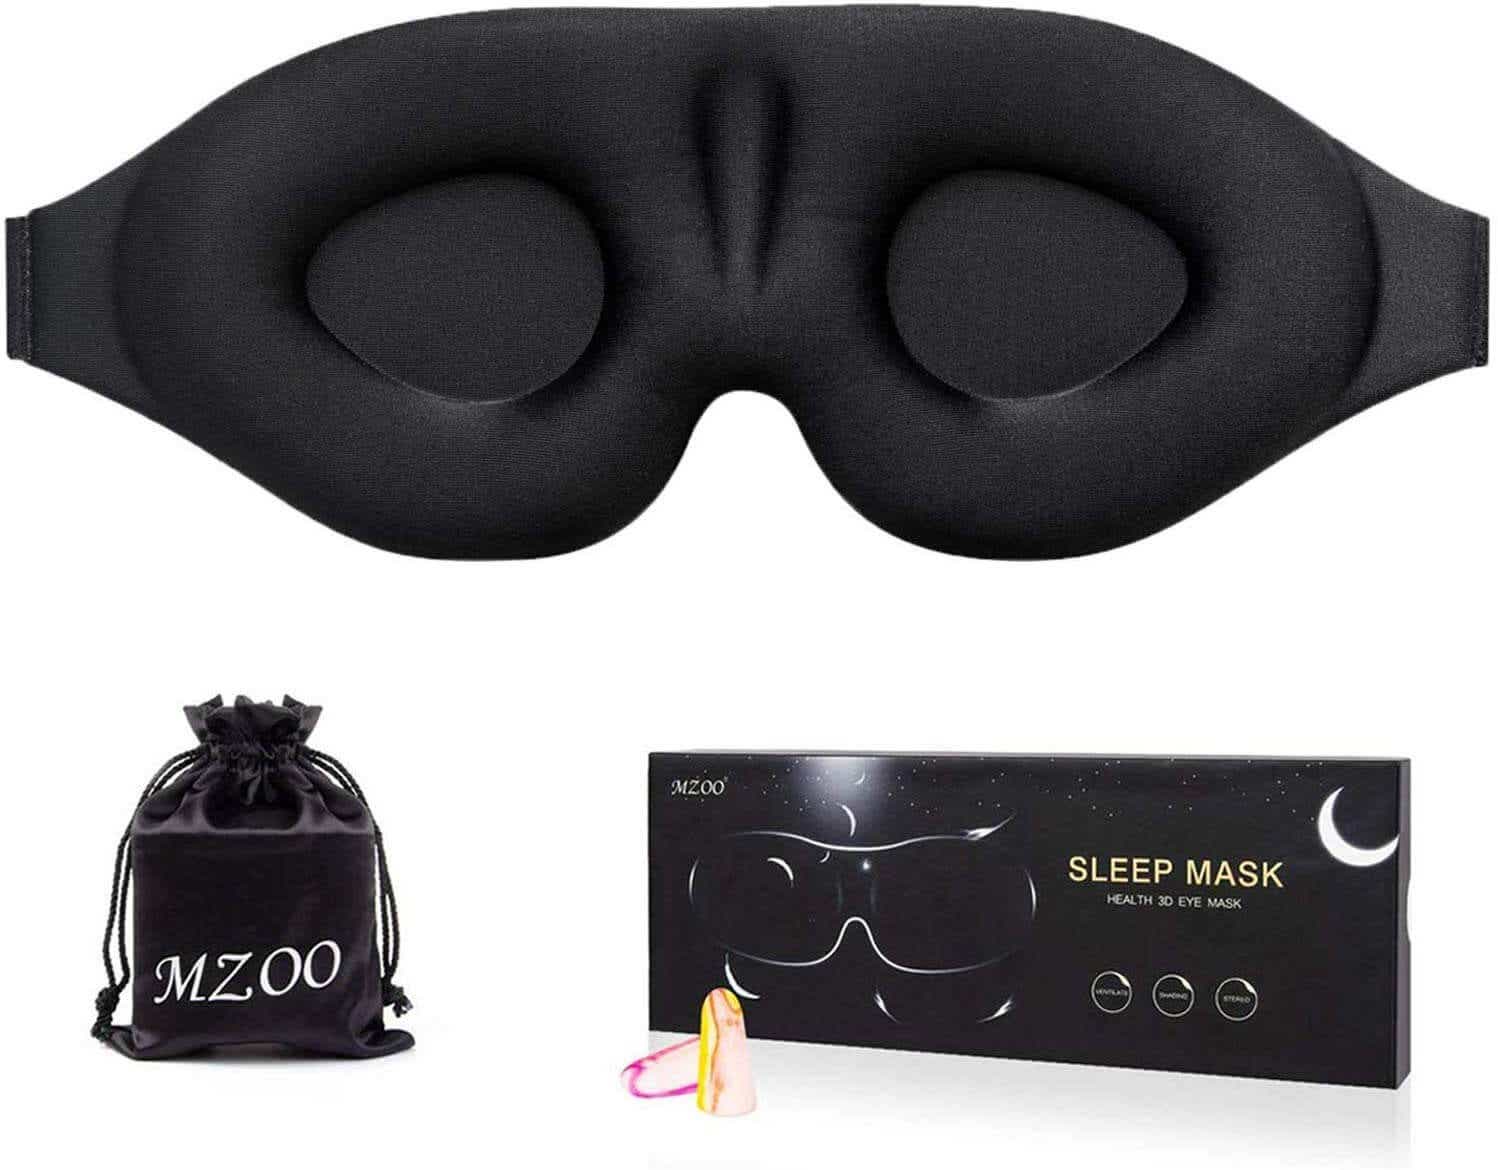 mzoo sleep mask